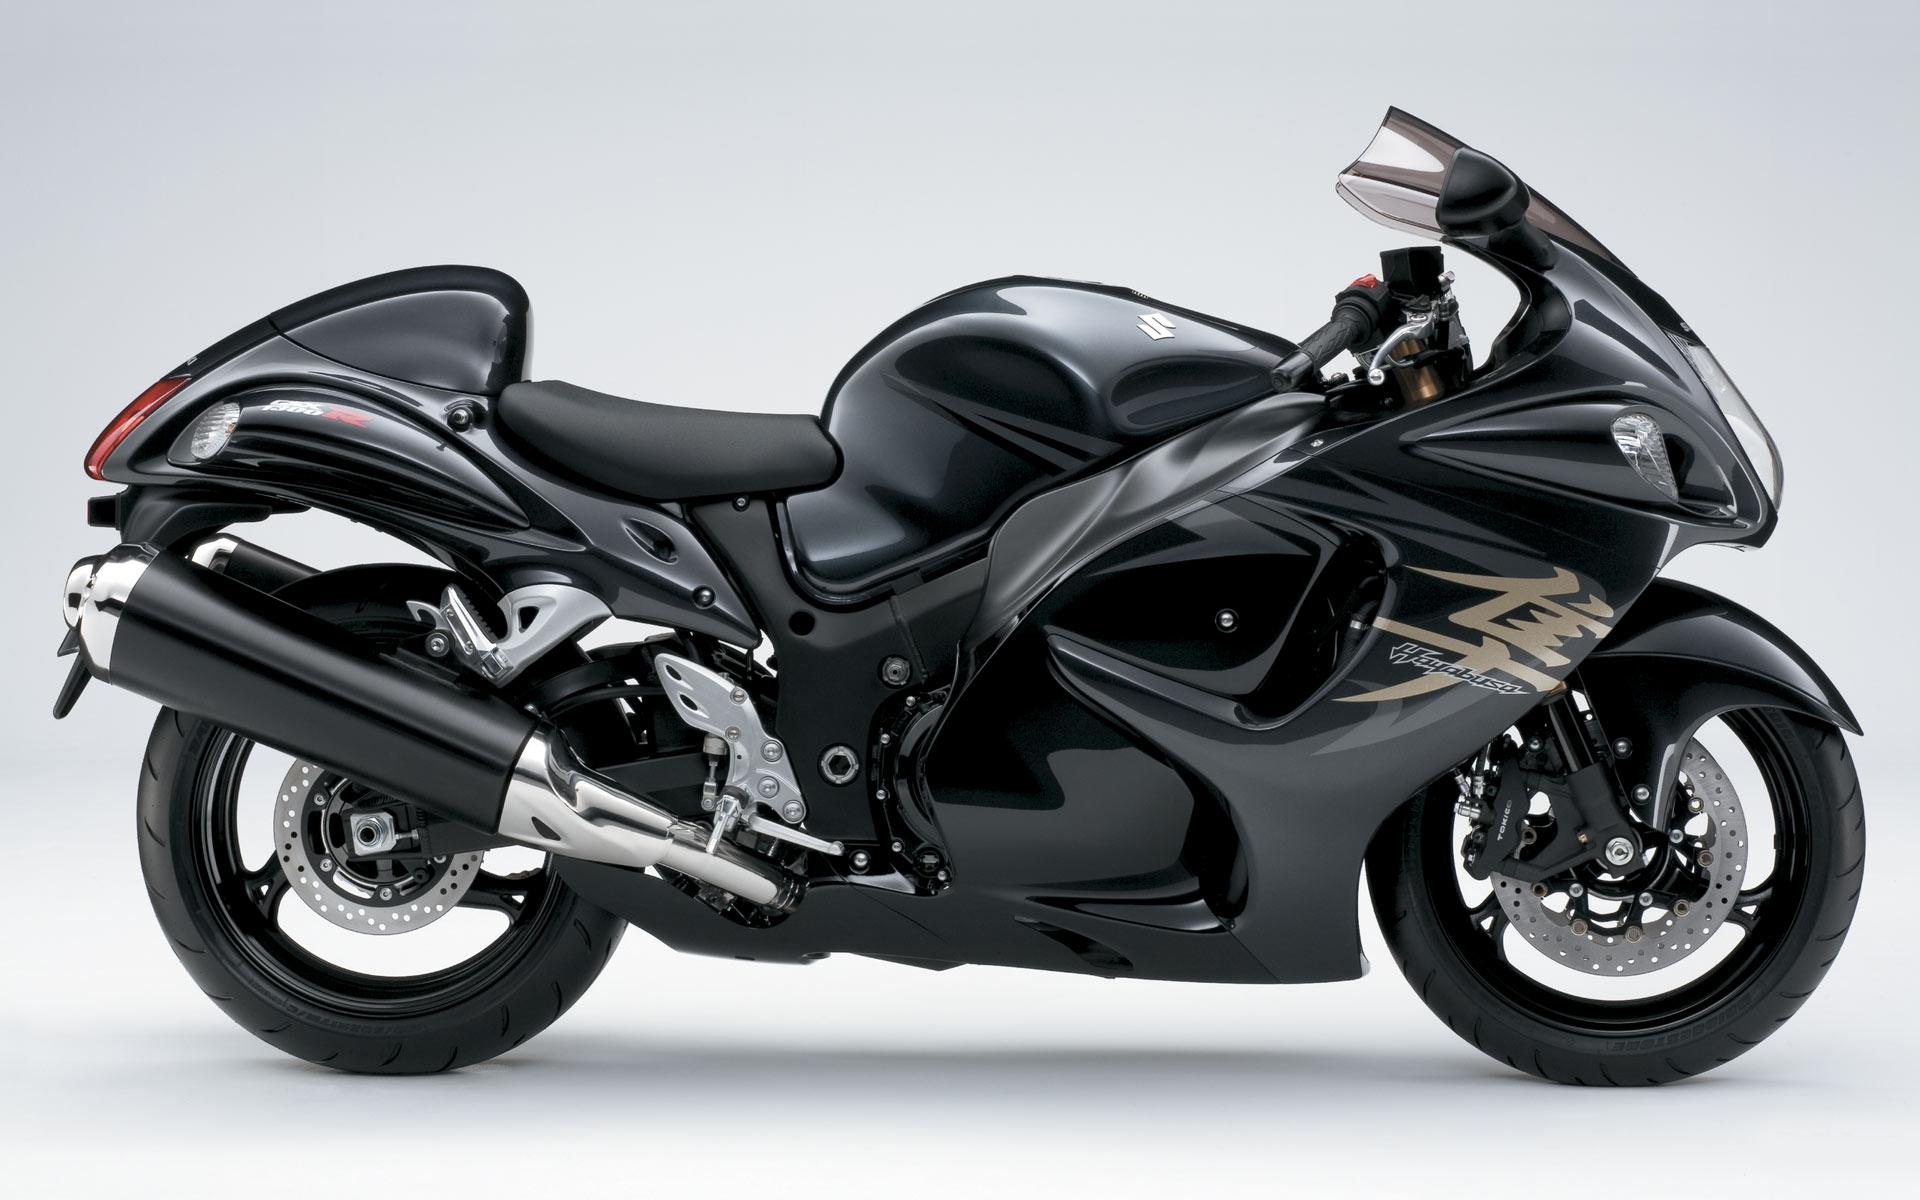 Black Motorcycle Suzuki Hayabusa Wallpaper Desktop With